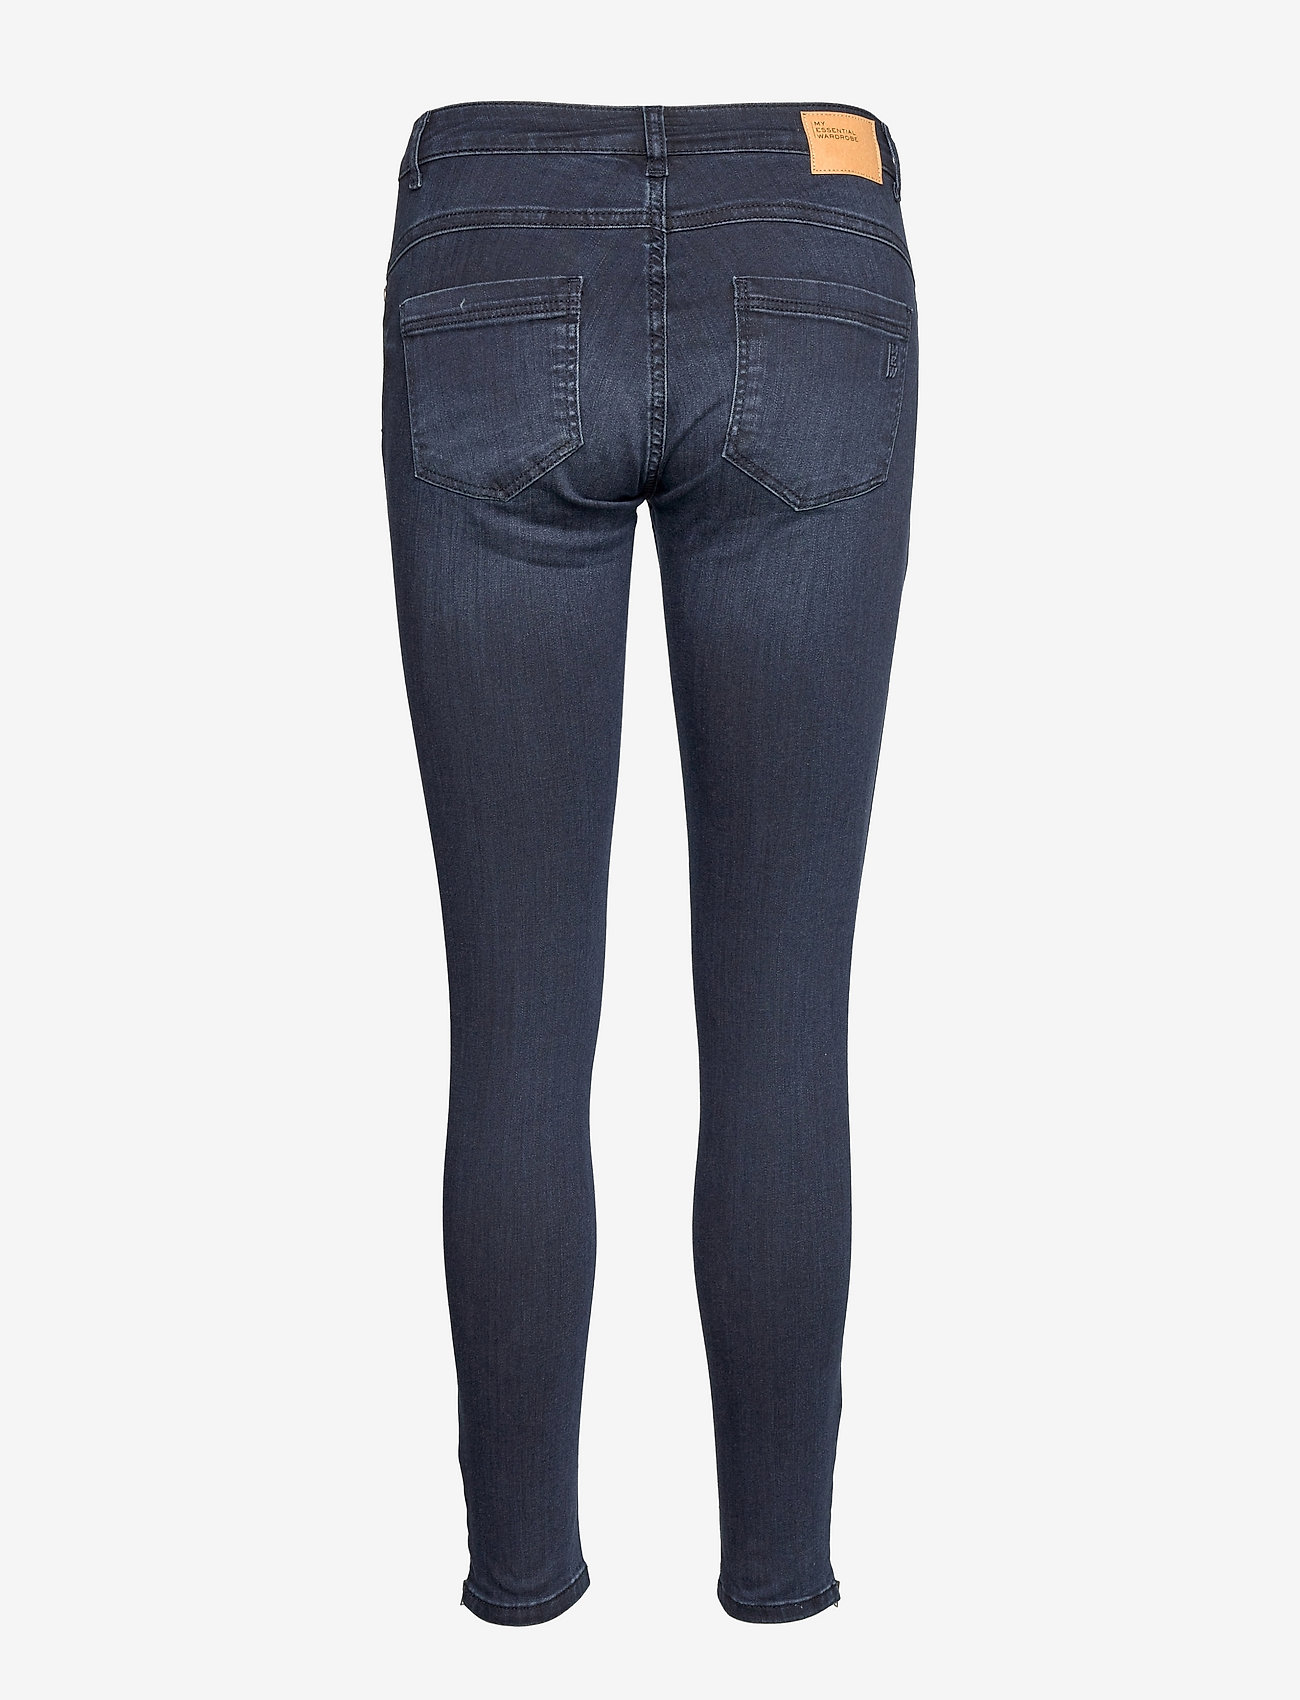 My Essential Wardrobe - 31 THE CELINAZIP 100 SLIM Y - slim fit jeans - dark blue wash - 1